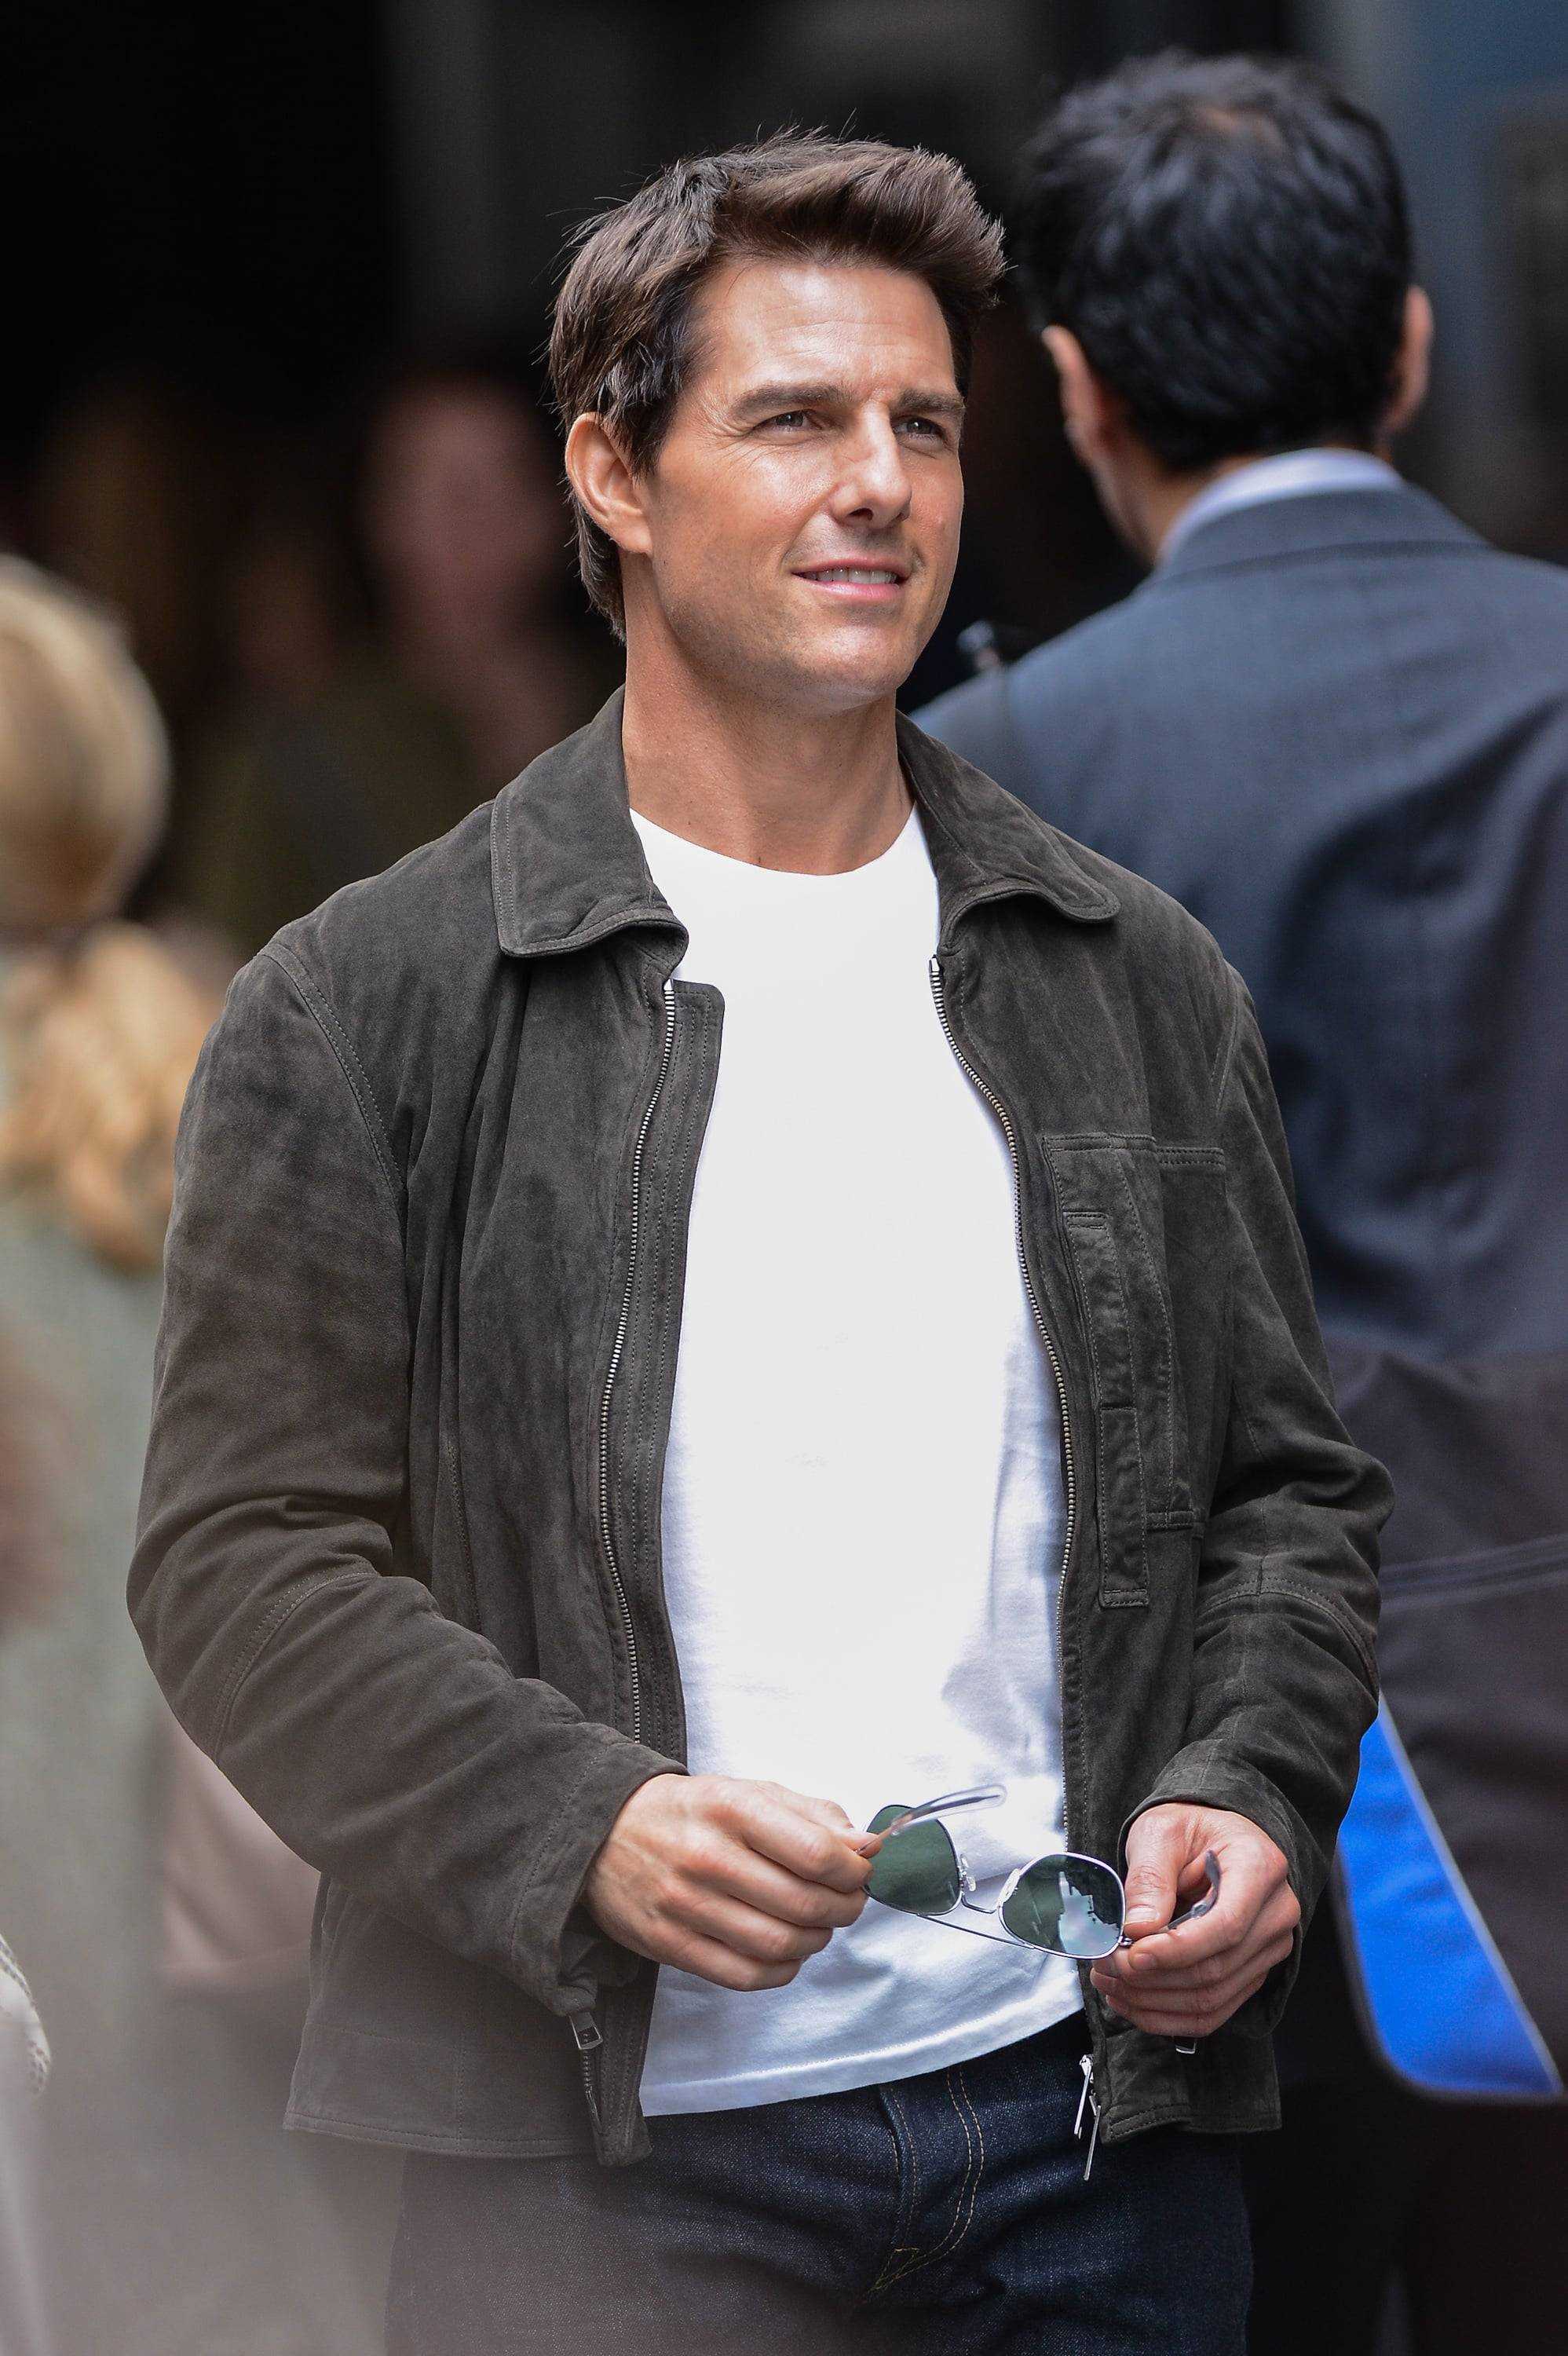 Nhan sắc điển trai không hề thay đổi theo thời gian của Tom Cruise.